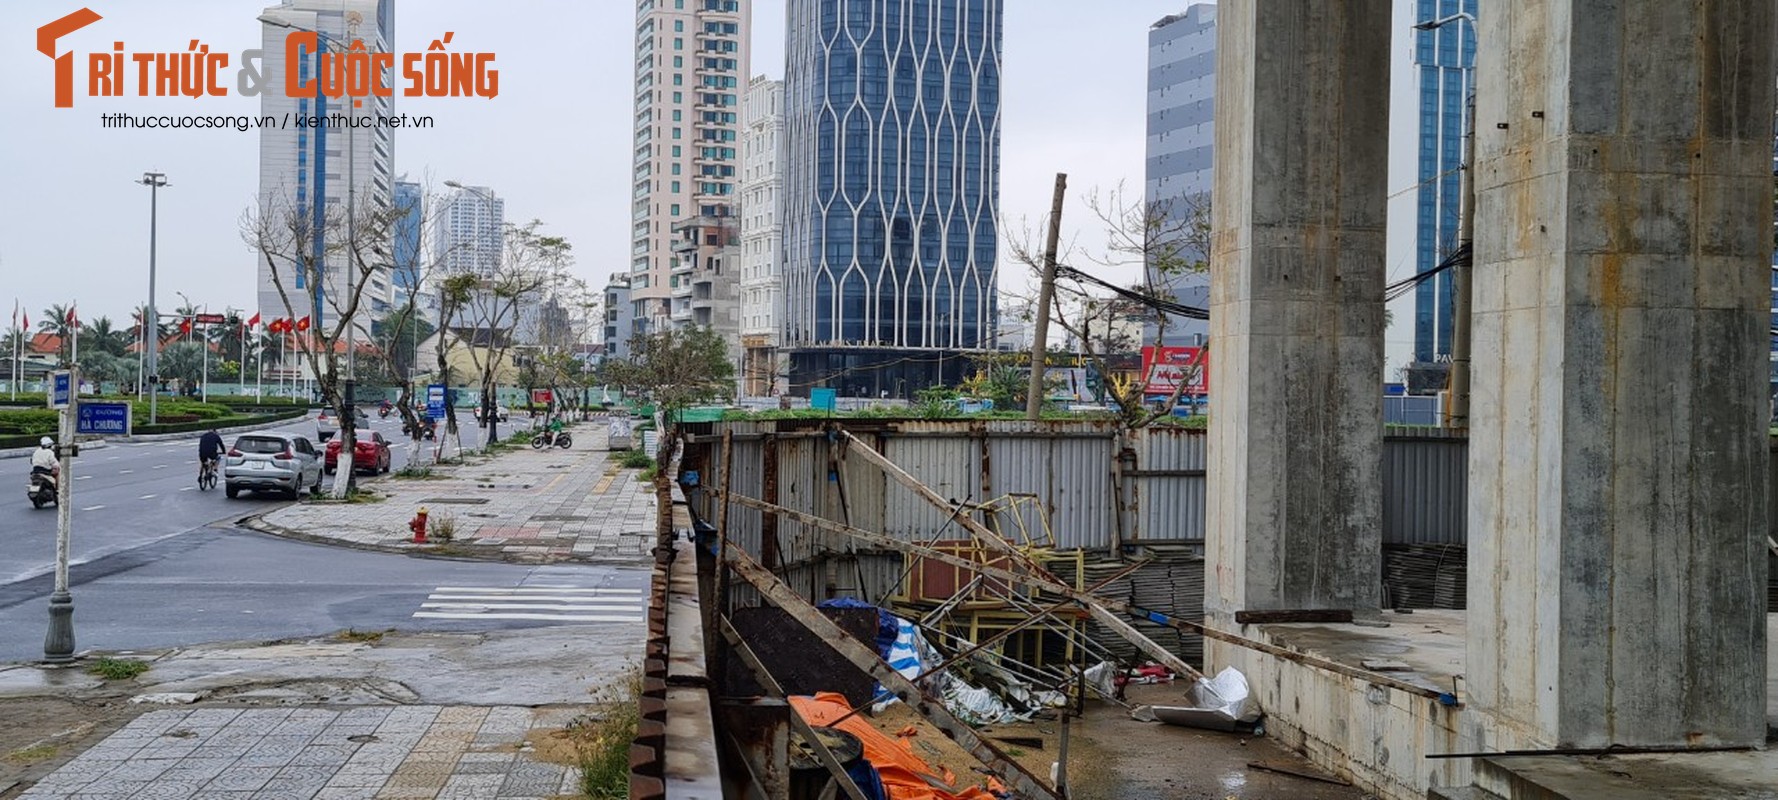 Nhiều công trình xây dựng bỏ hoang trên con đường đẹp nhất Đà Nẵng - Ảnh 5.